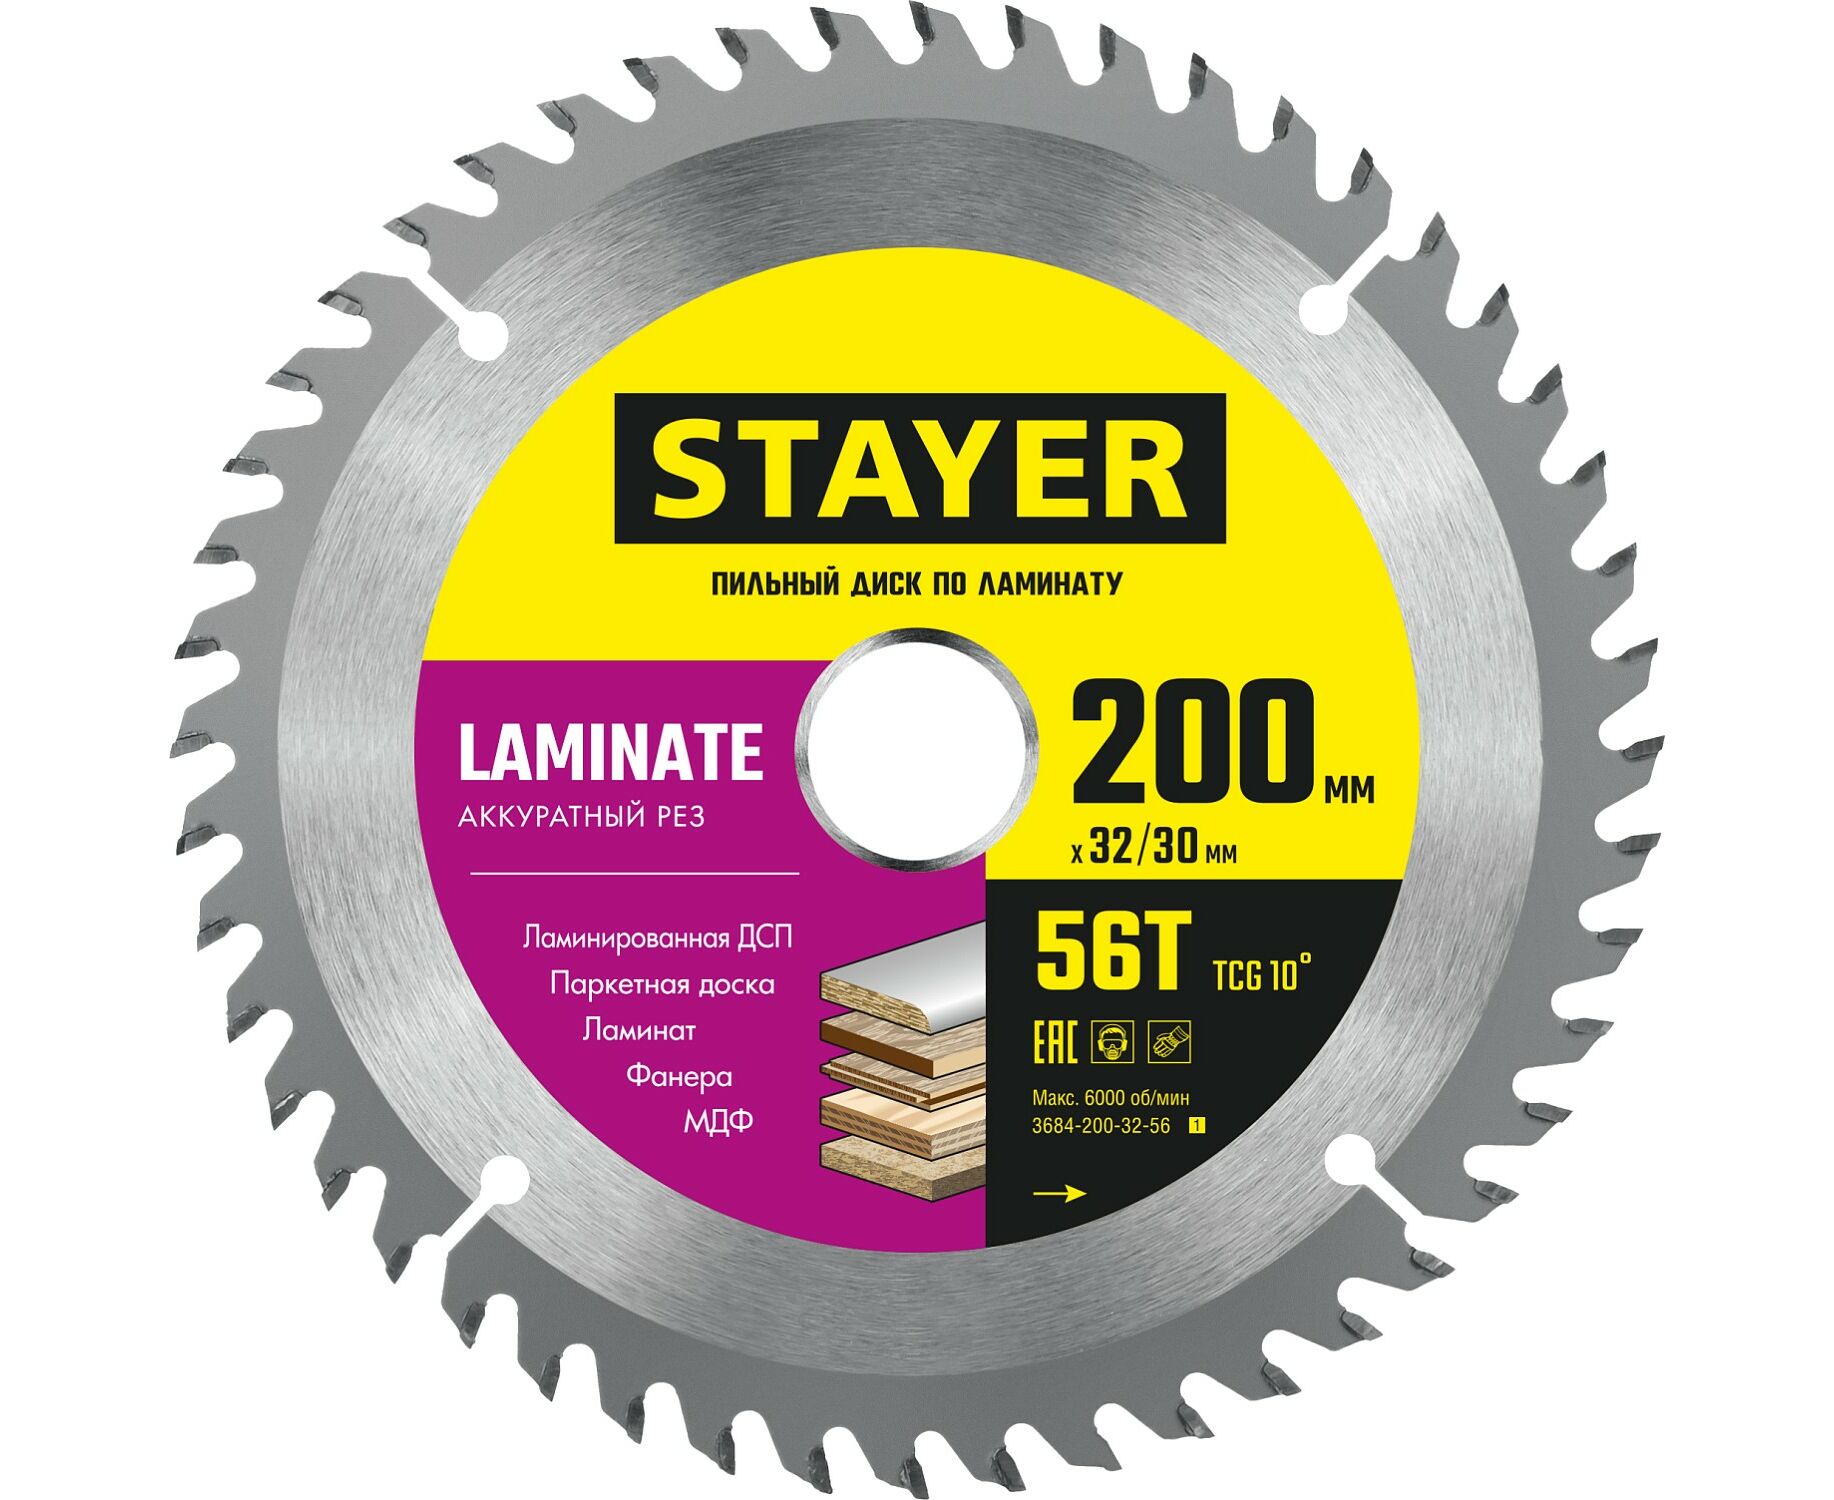 Пильный диск STAYER LAMINATE 200 x 32/30мм 56T, по ламинату, аккуратный рез пильный диск stayer laminate 185 x 30 20мм 56t по ламинату аккуратный рез